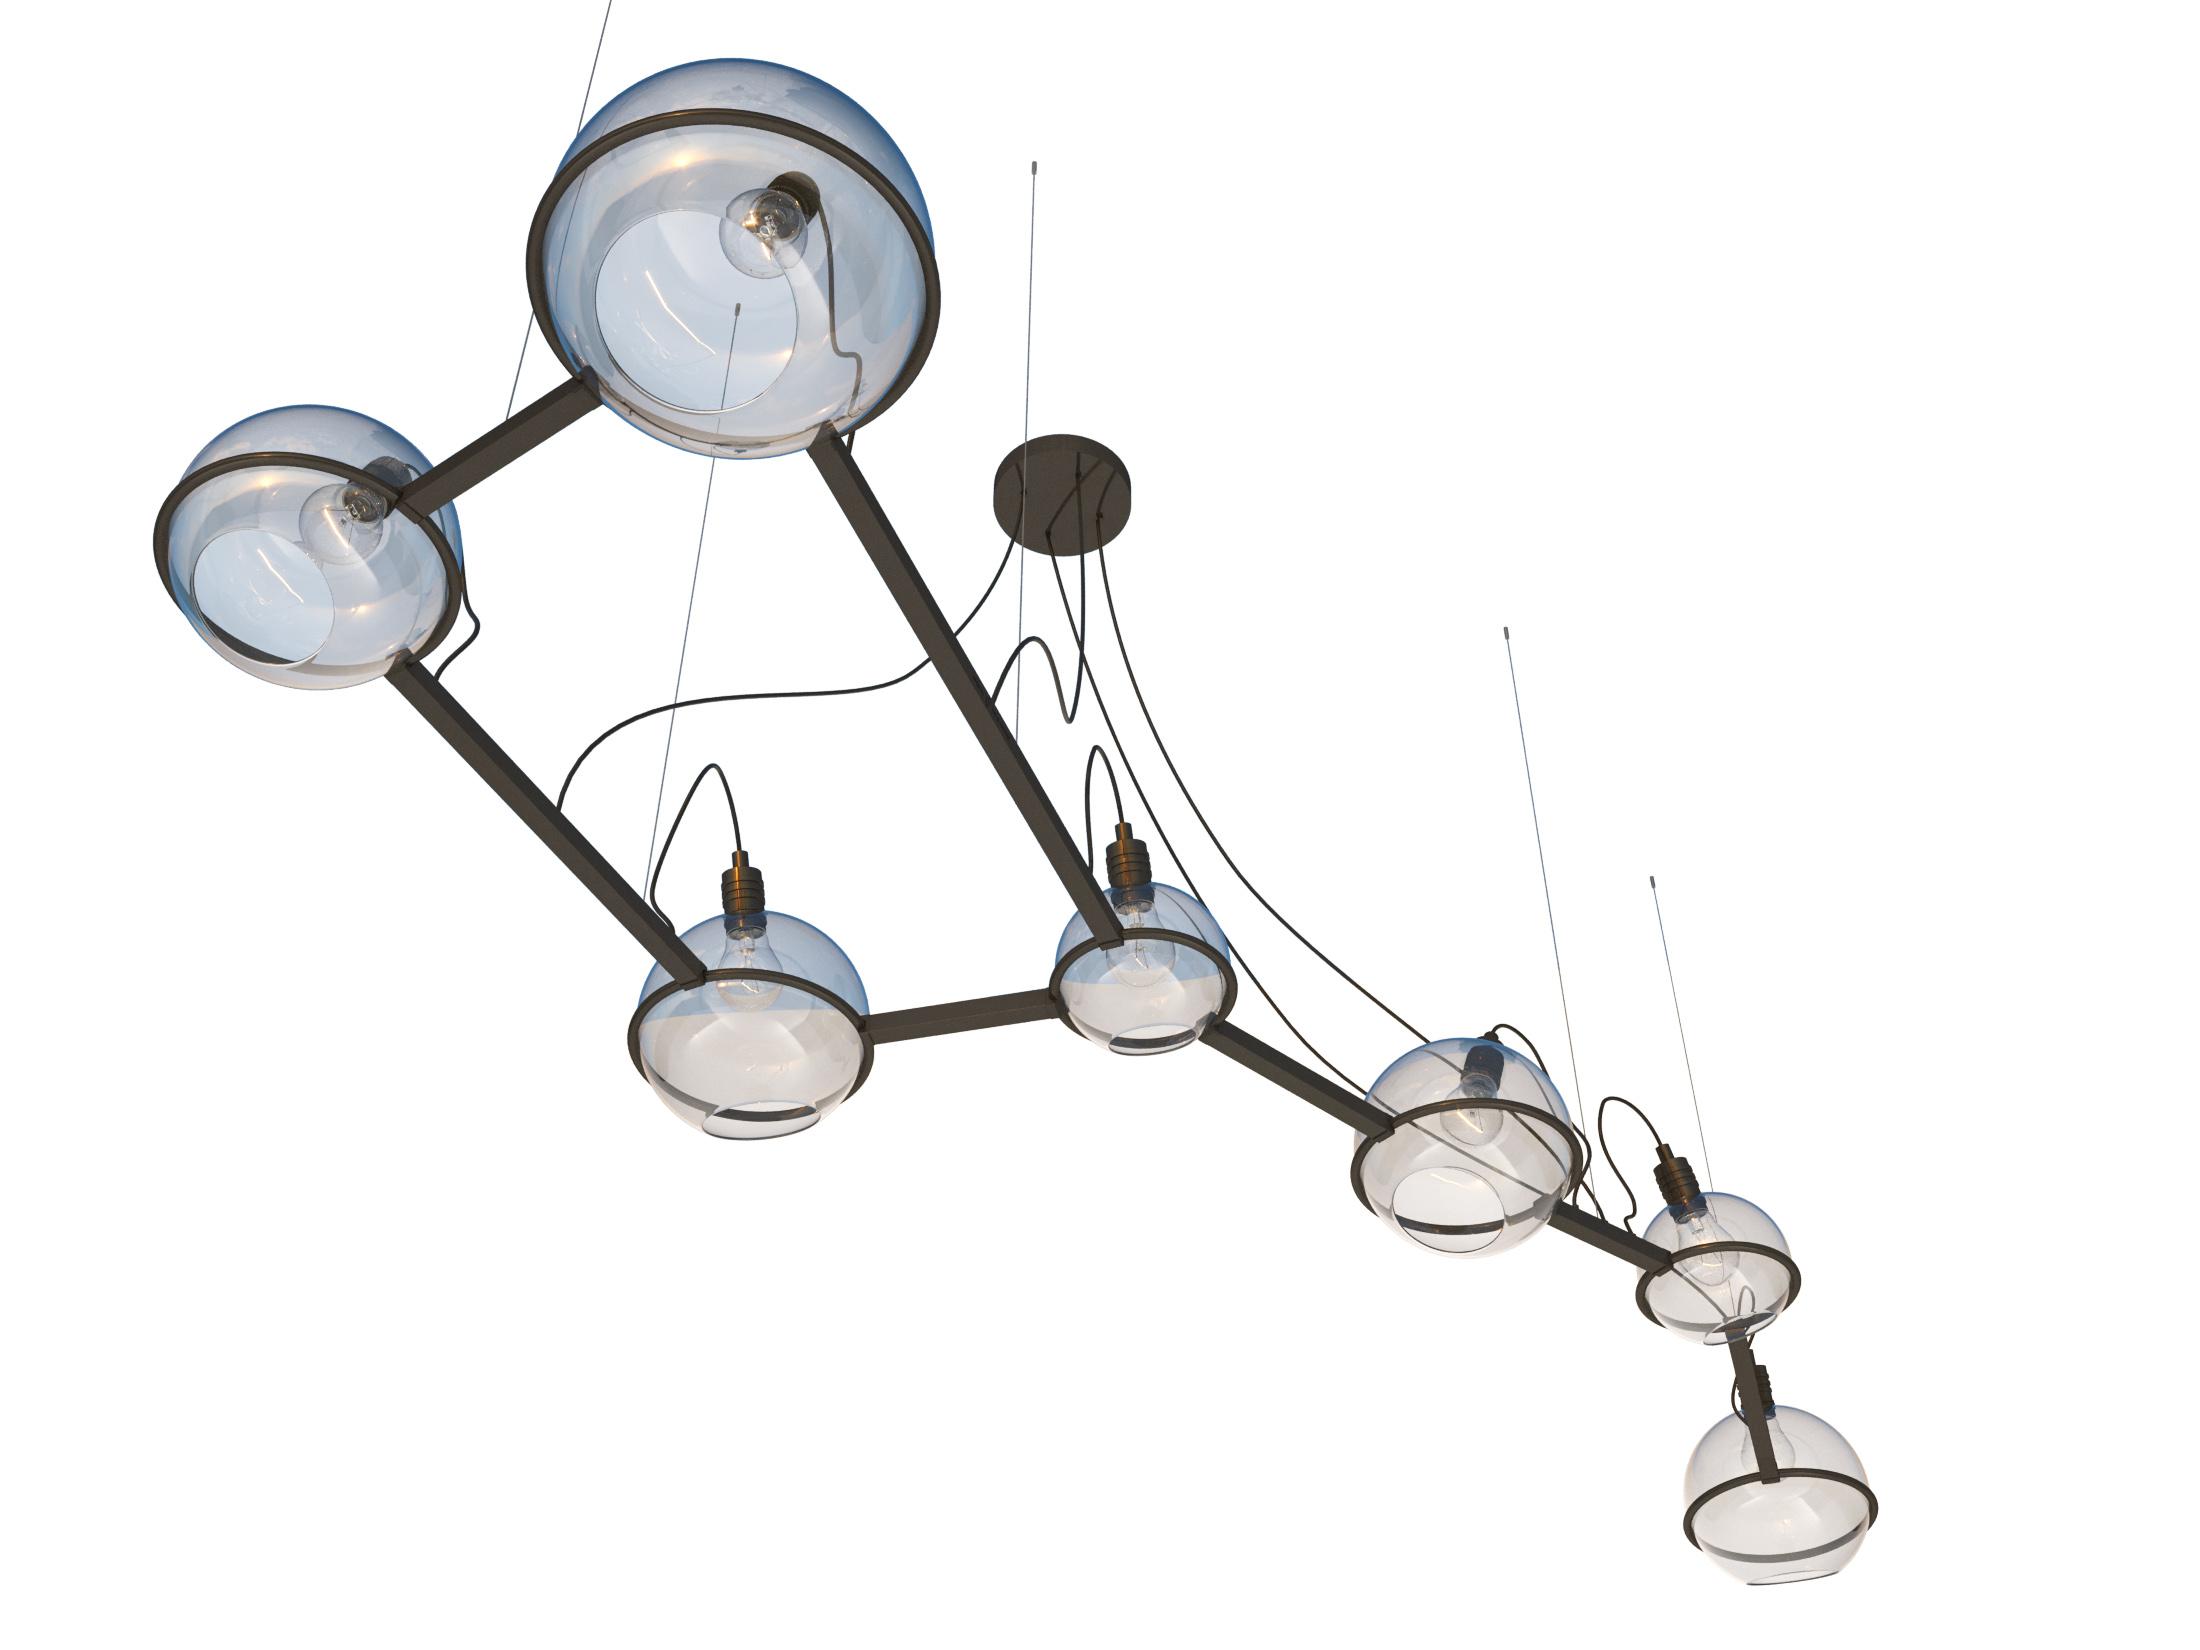 Ursa Major lamp, SKU. 20915 by Pikartlights 3d model